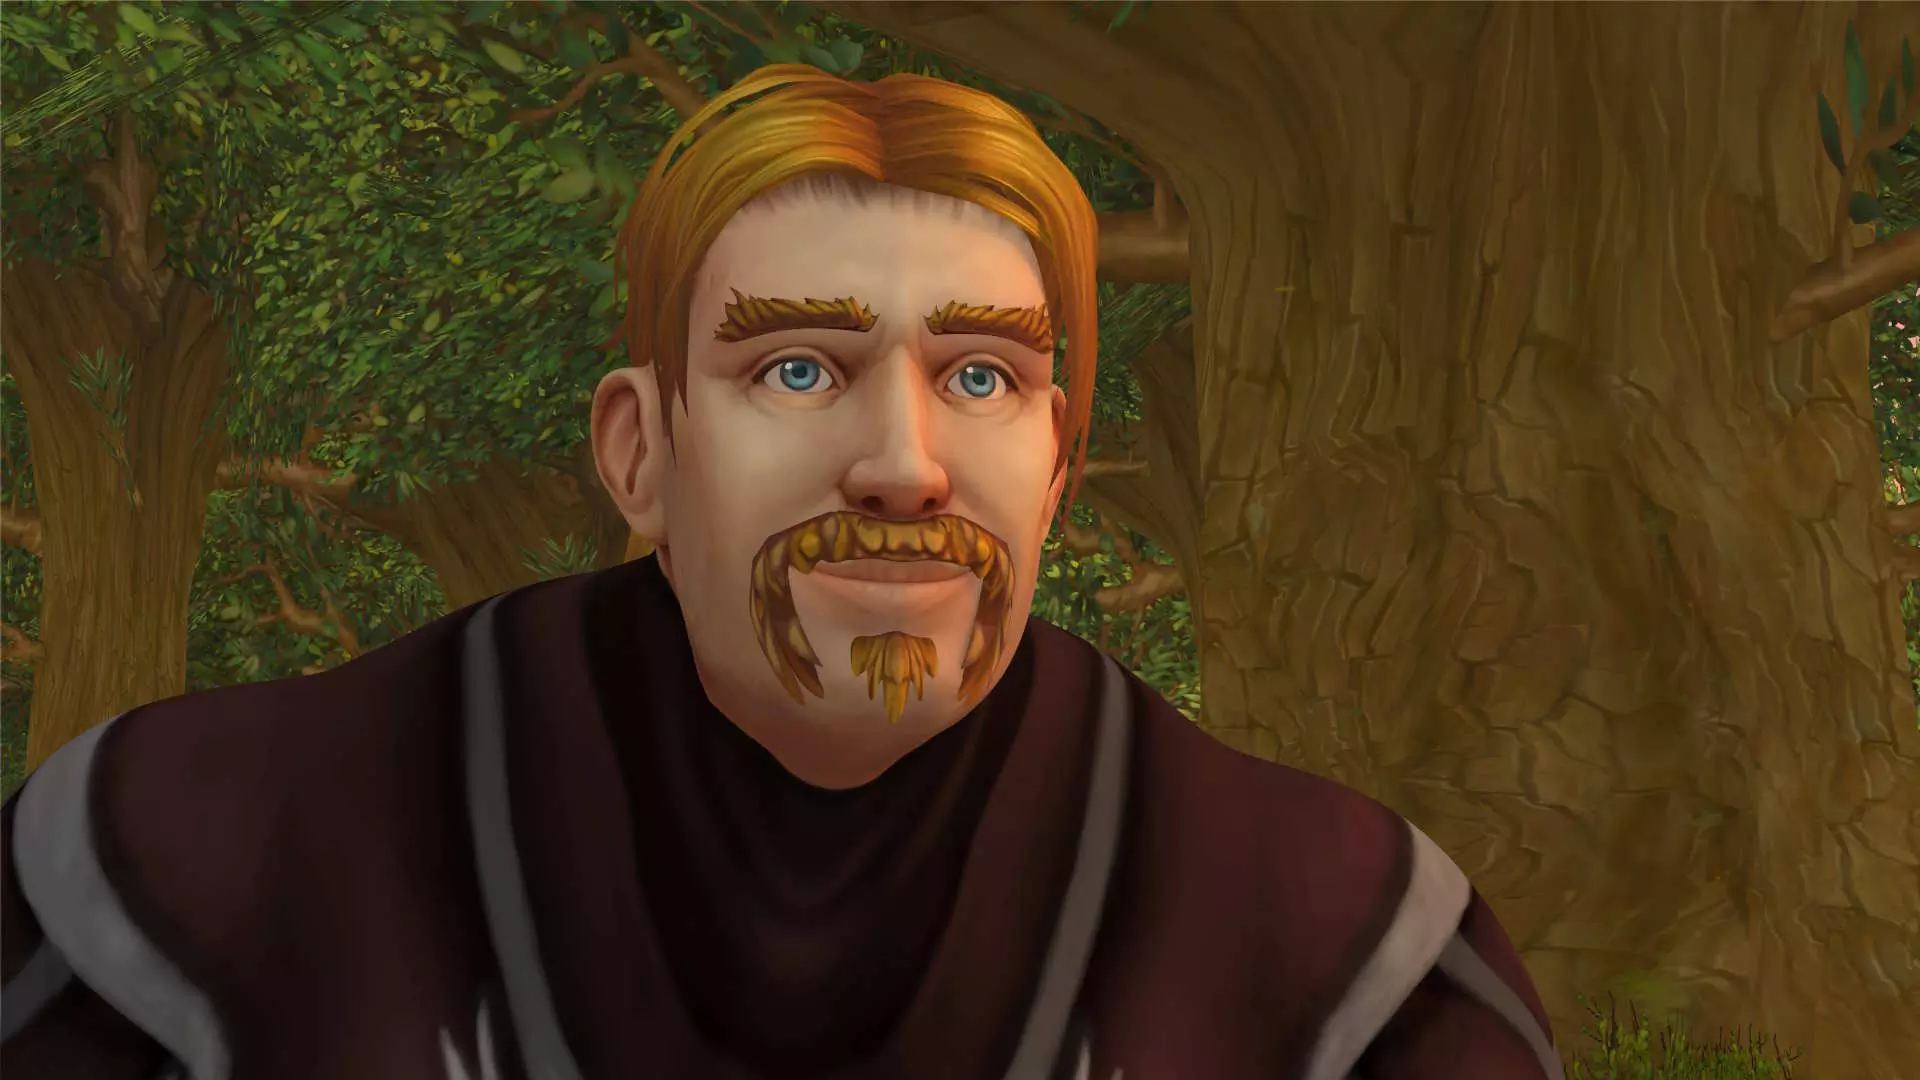 Animert bilde fra dataspillet World of Warcraft. En mannlig karakter med blond-oransje hår og bart. Han smiler.